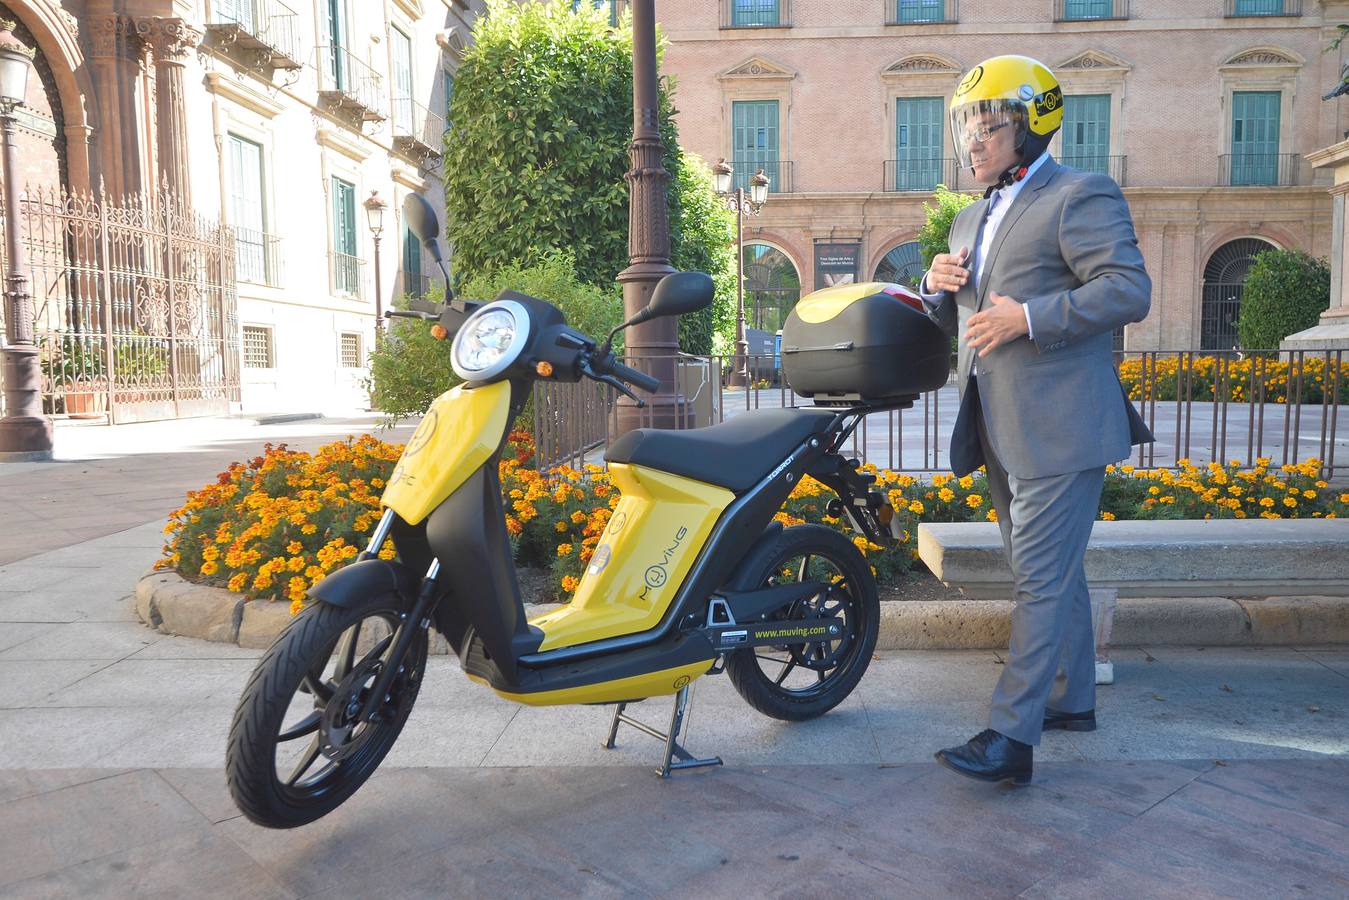 Las motos eléctricas de alquiler por minutos ya están en Murcia. Son fácilmente distinguibles por su color amarillo y, en poco tiempo, se verán muchas por la ciudad